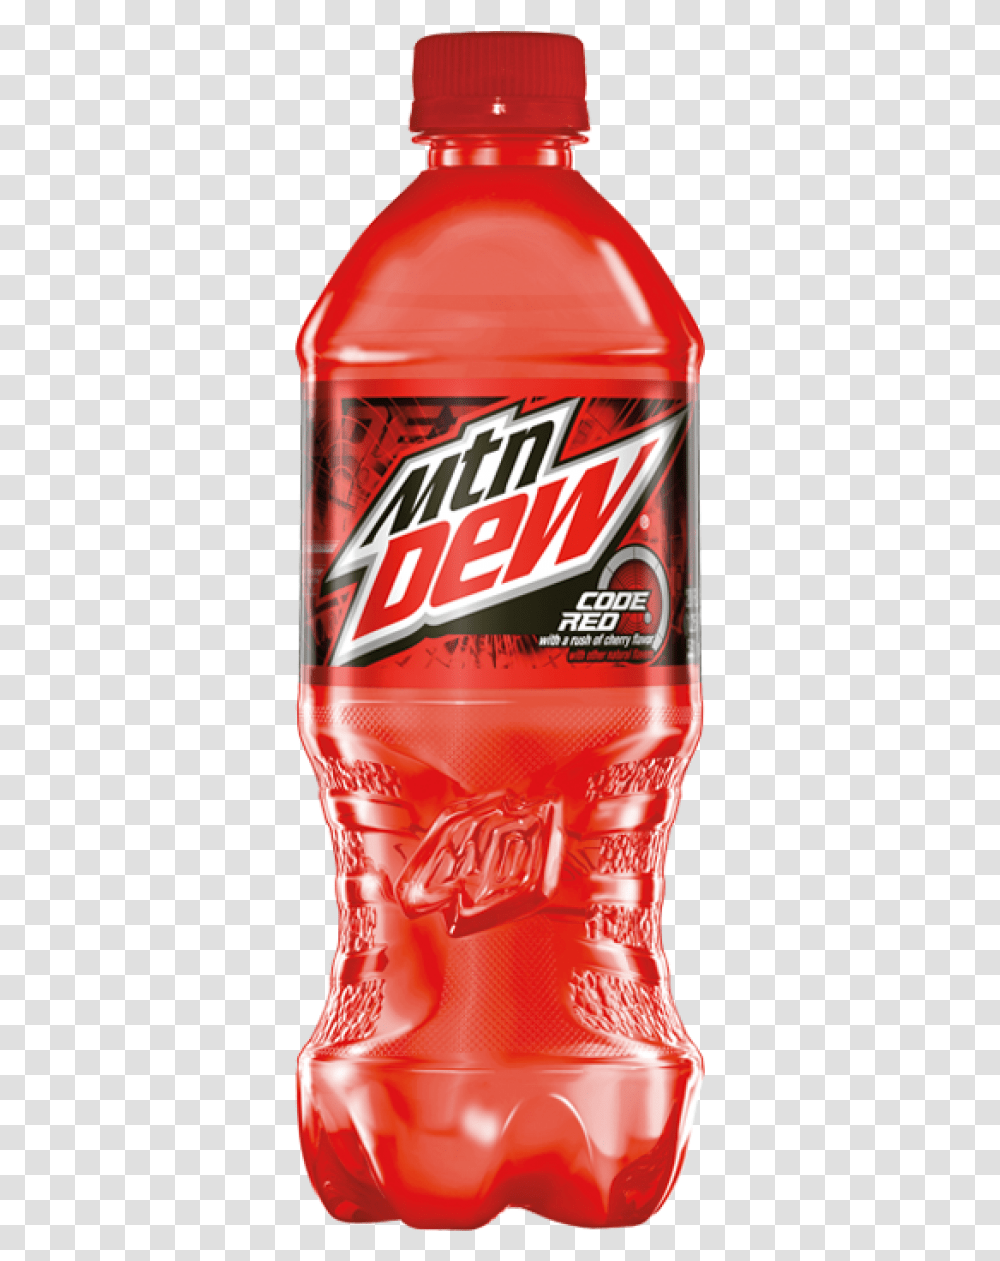 Mountain Dew Code Red Beverage Drink Bottle Liquor Transparent Png Pngset Com